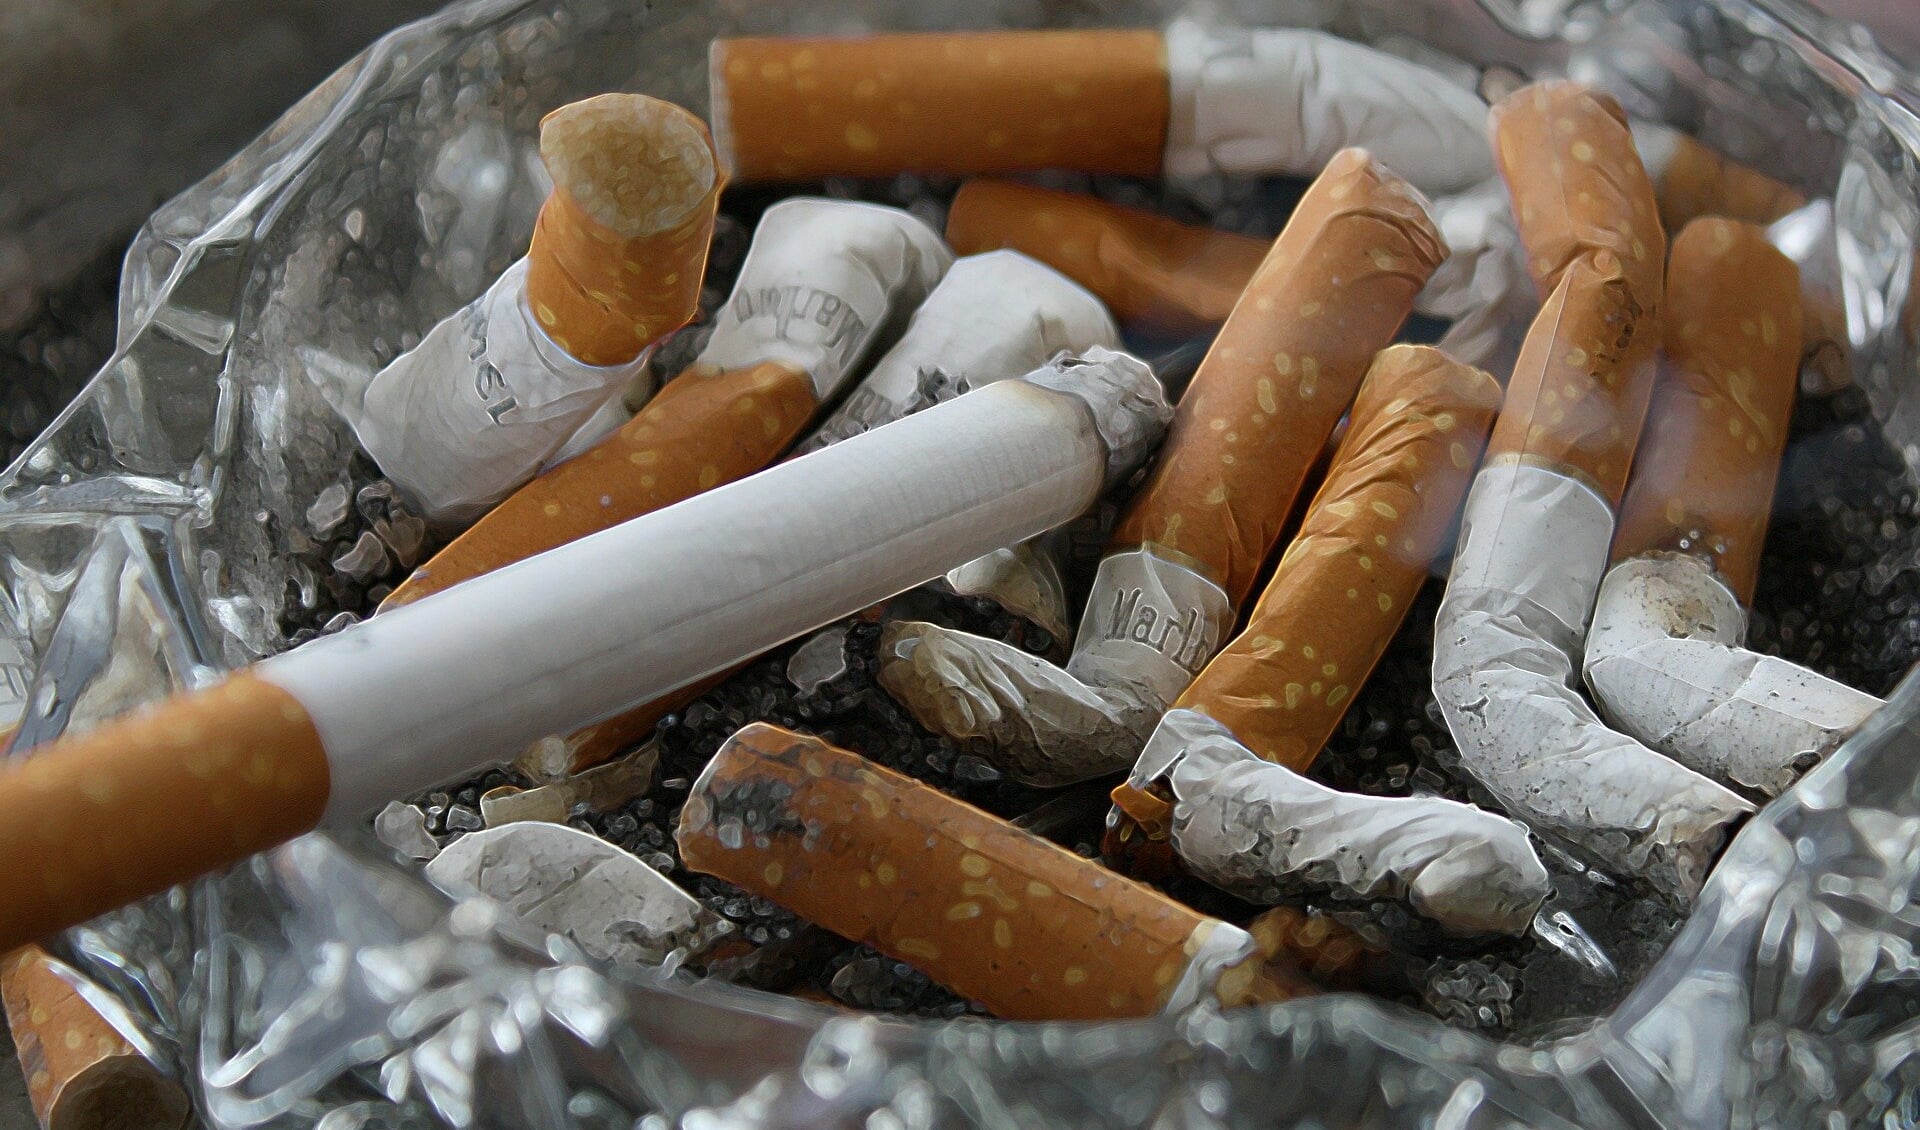 23,1 procent van de Tielenaren rookt namelijk wel eens een sigaret. 